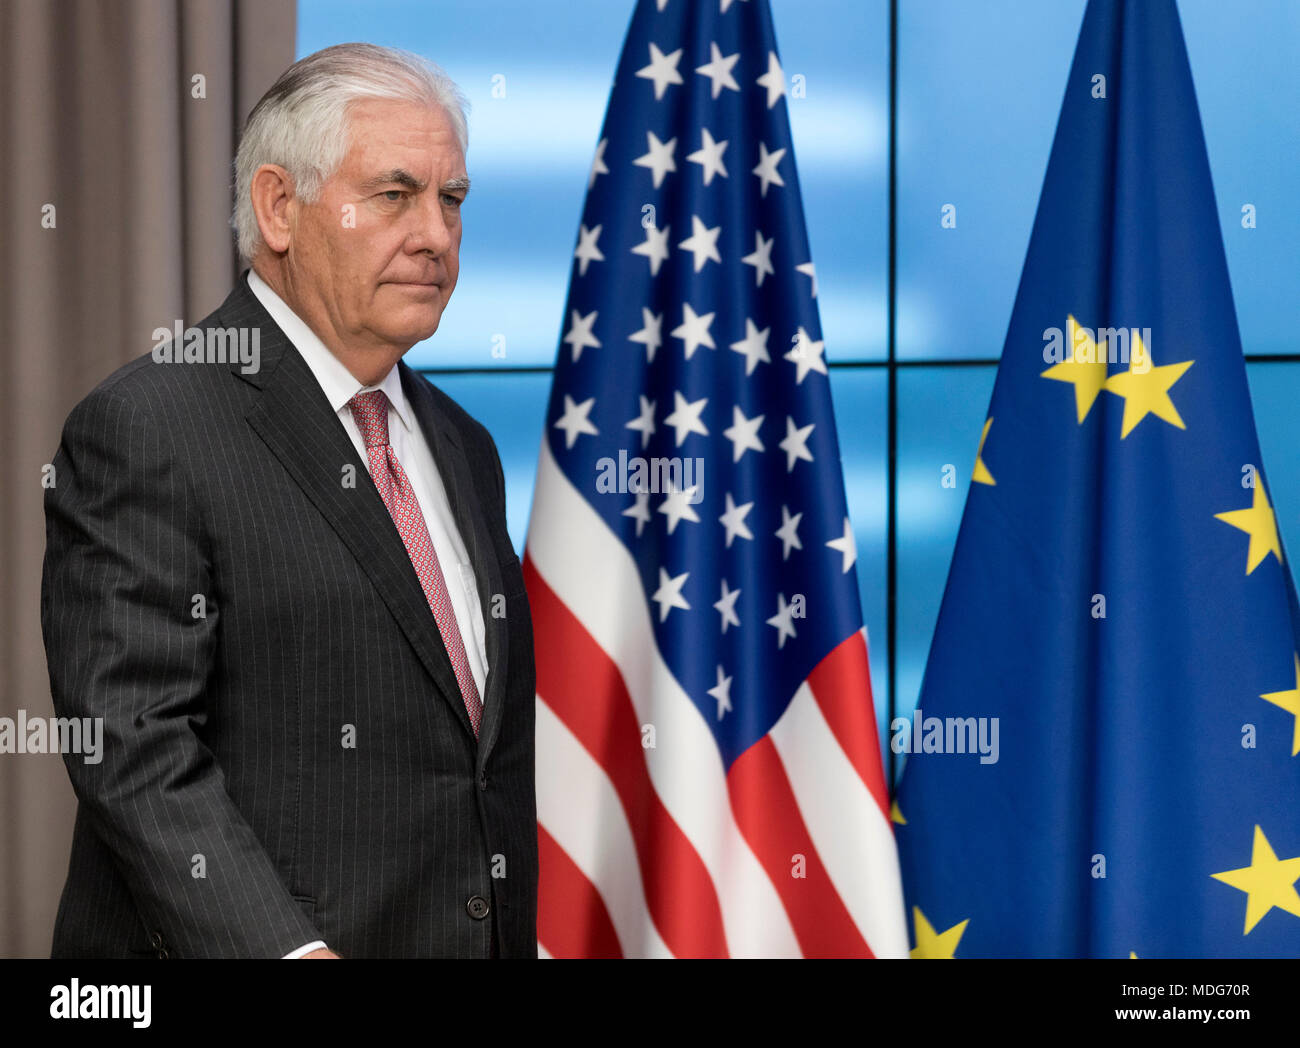 Belgique, Bruxelles, le 2017/12/05 : Le secrétaire d'État des États-Unis, Rex Tillerson lors du Conseil de l'Europe Banque D'Images